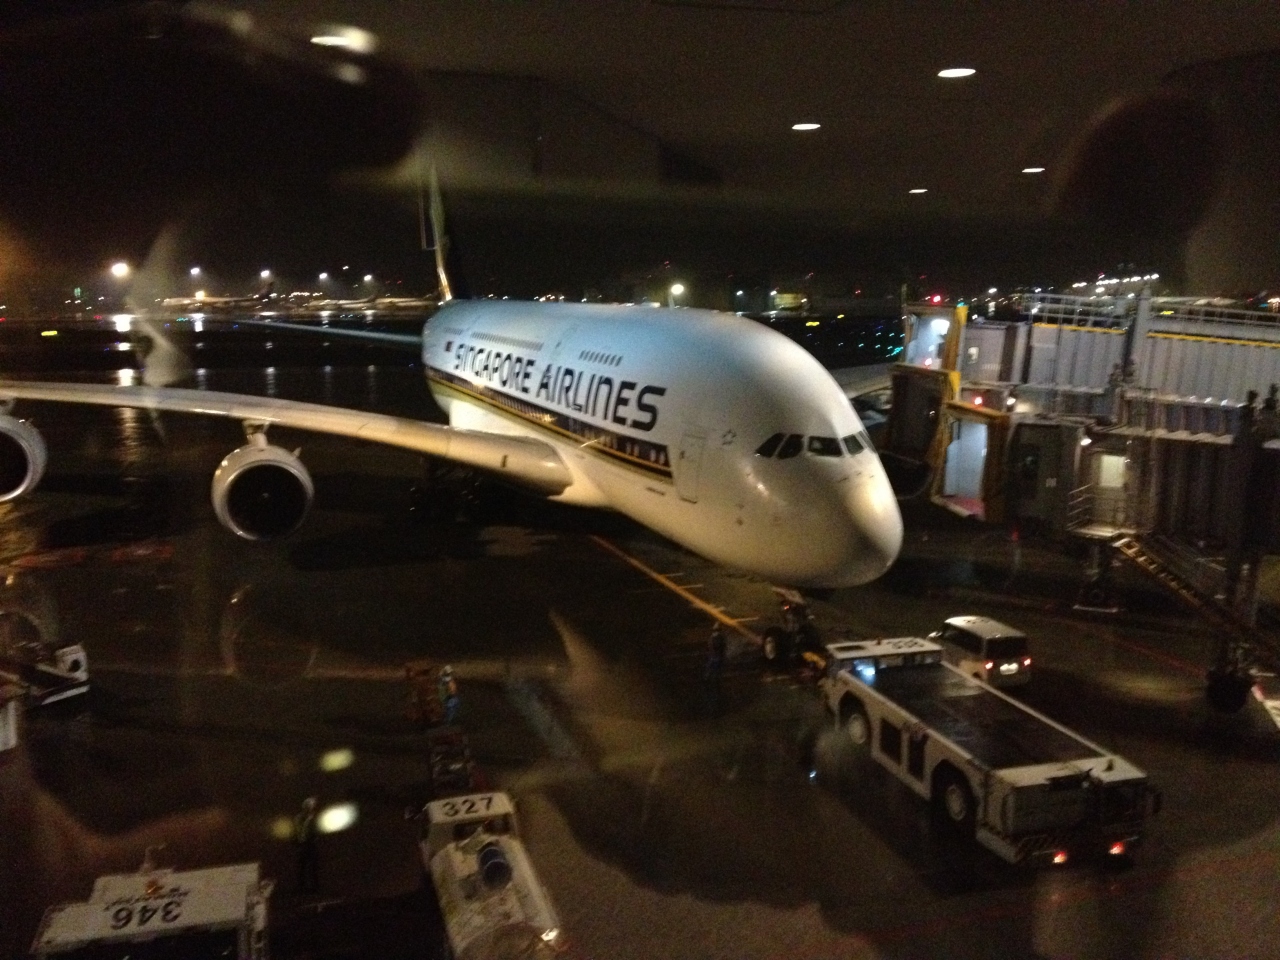 シンガポール航空 Sq ビジネスクラス A380 800 ロサンゼルスー成田 Lax Nrt 搭乗記 12年9月 ロサンゼルス アメリカ の旅行記 ブログ By ちゃんくさん フォートラベル